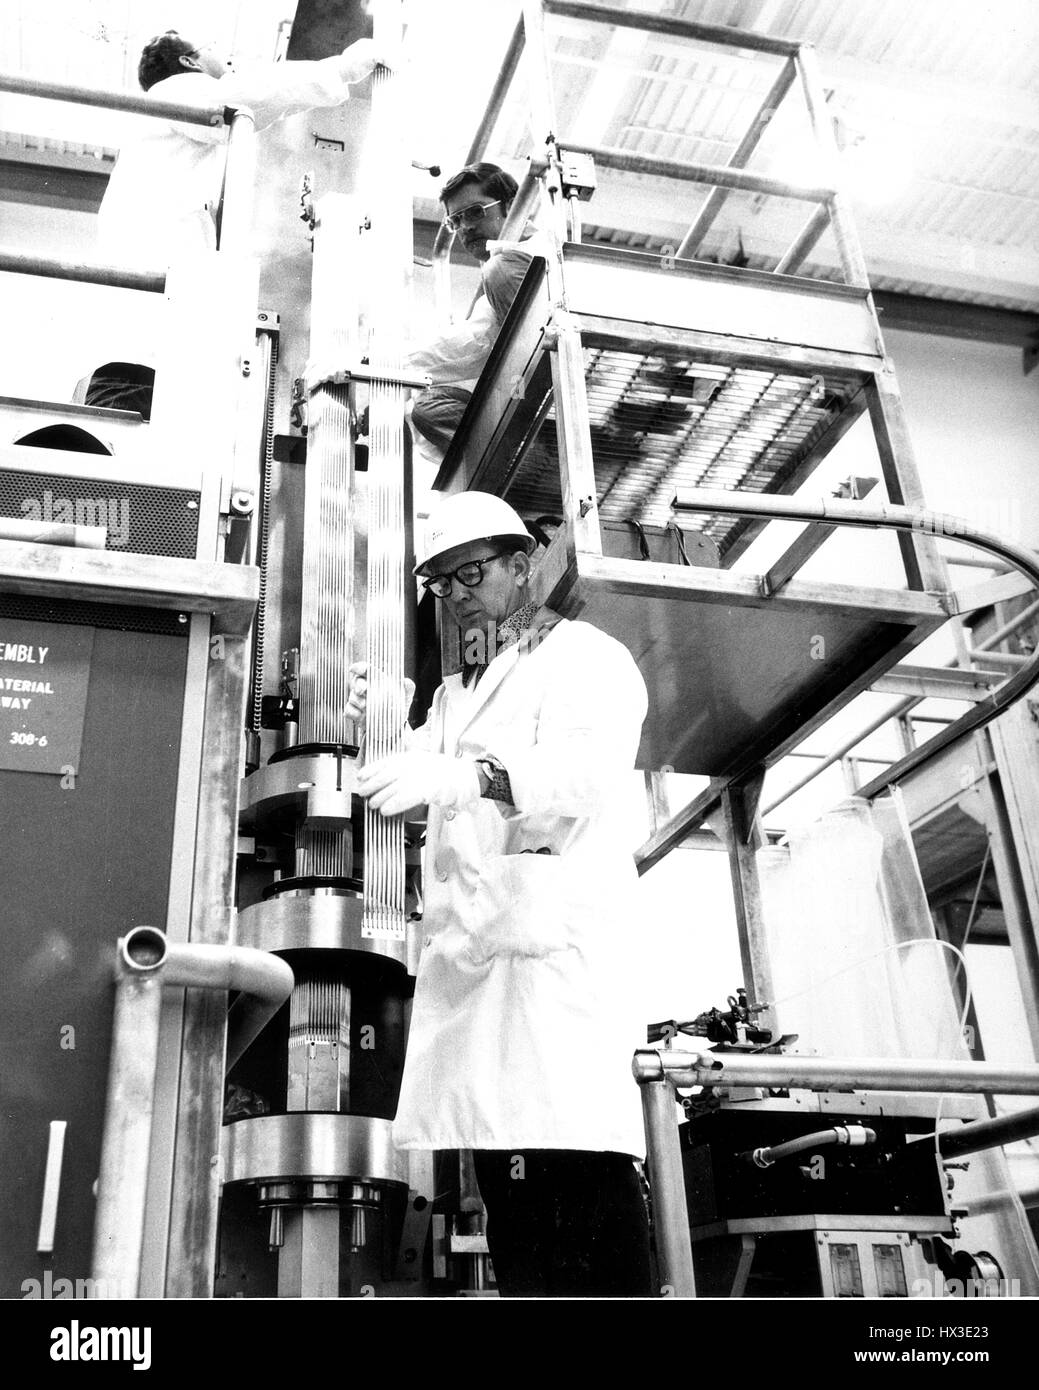 Techniker mit der Firma Westinghouse Hanford arrangieren Kraftstoff Stifte für sechseckige Brennelement, Washington, 1965. Bild mit freundlicher Genehmigung US Department of Energy. Stockfoto